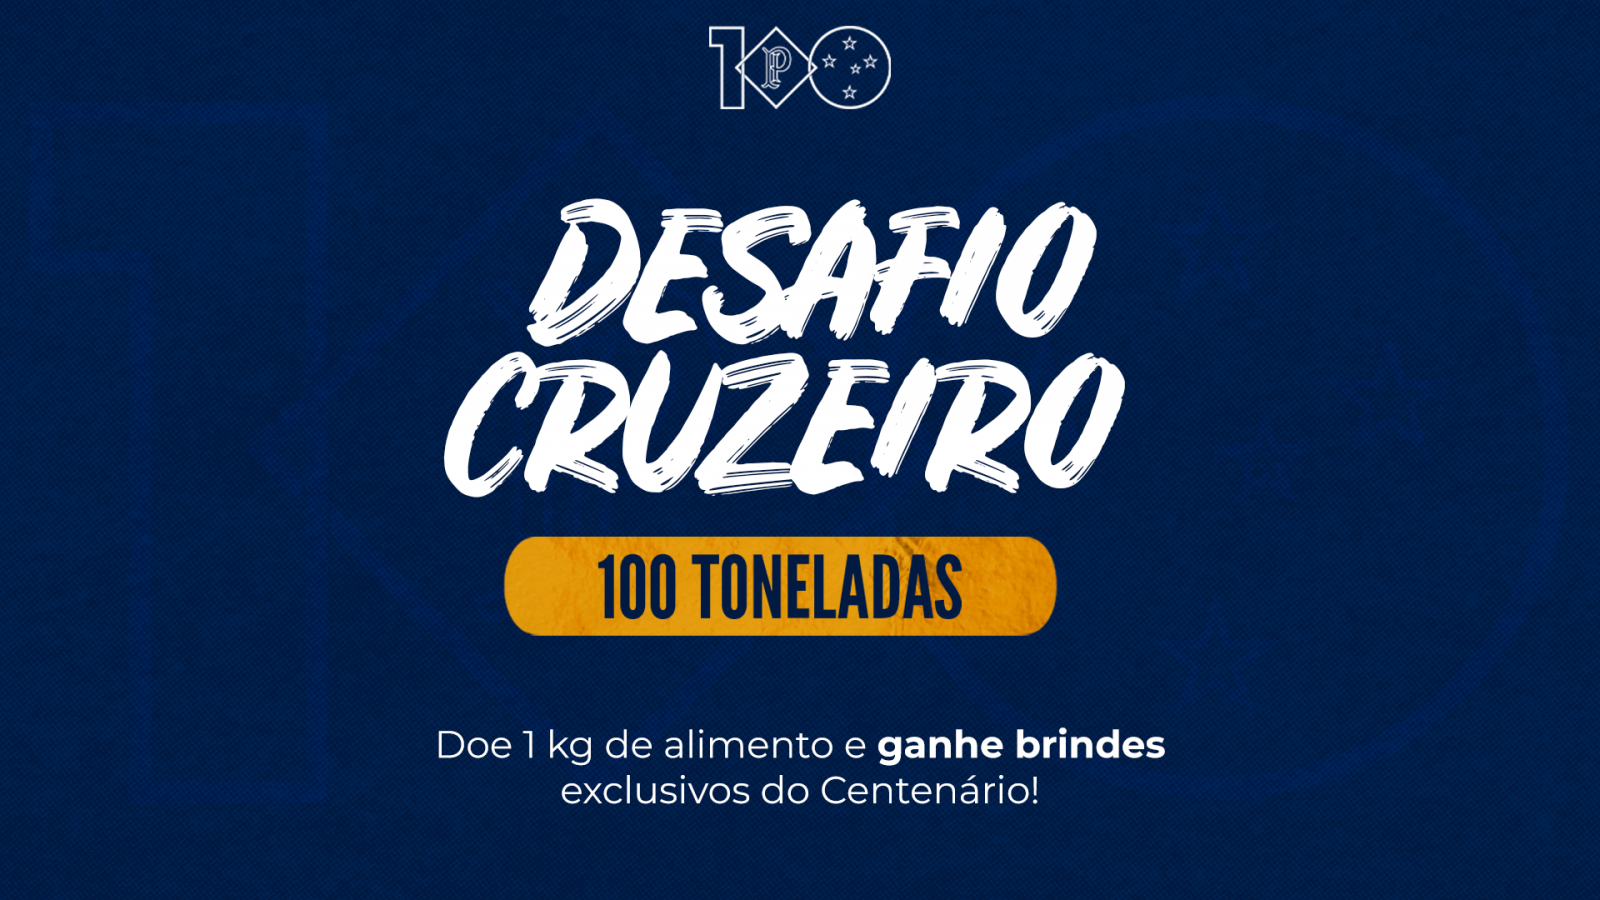 Blitze em nove pontos de BH relembram Centenário e Cruzeiro lança “Desafio 100 Toneladas”, para apoiar causas sociais com alimentos arrecadados 